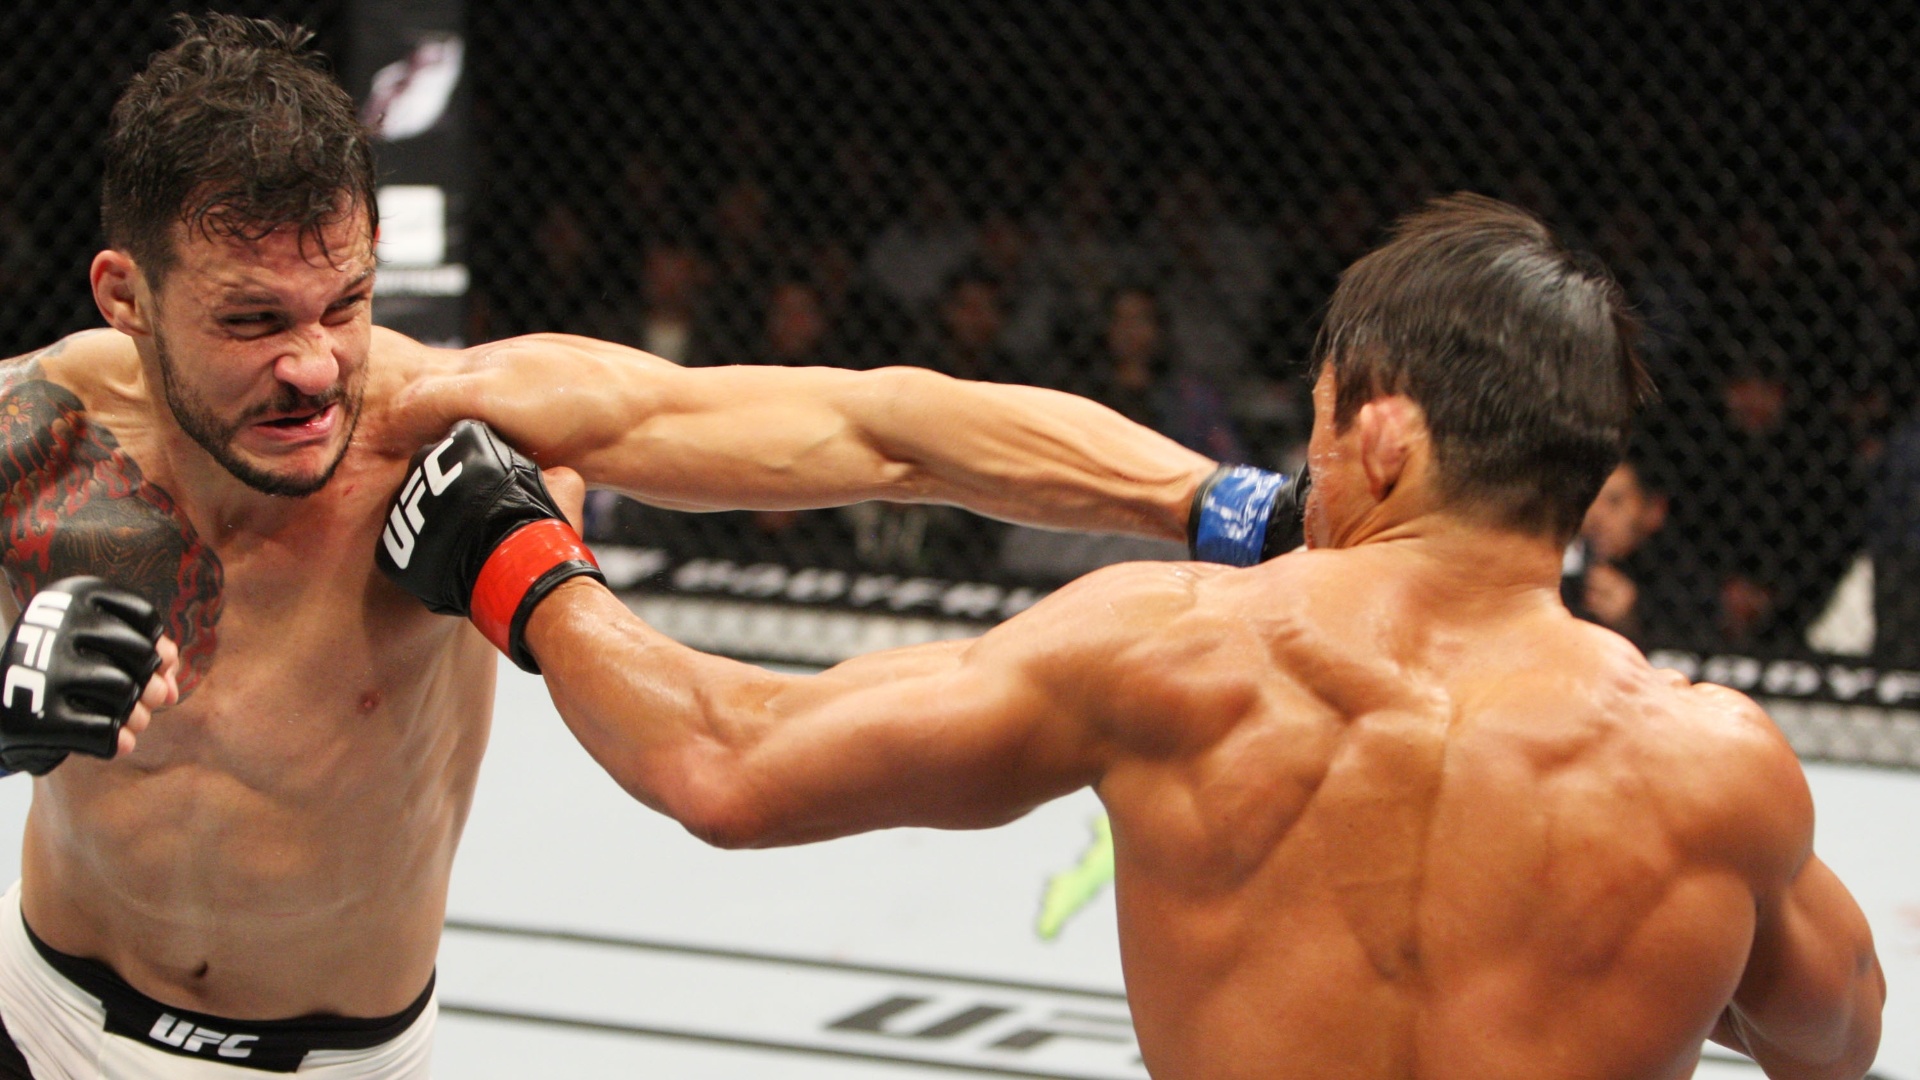 Alberto Mina venceu Akyiama por pontos, em decisão dividida que rendeu vaias do público da Coreia do Sul no UFC